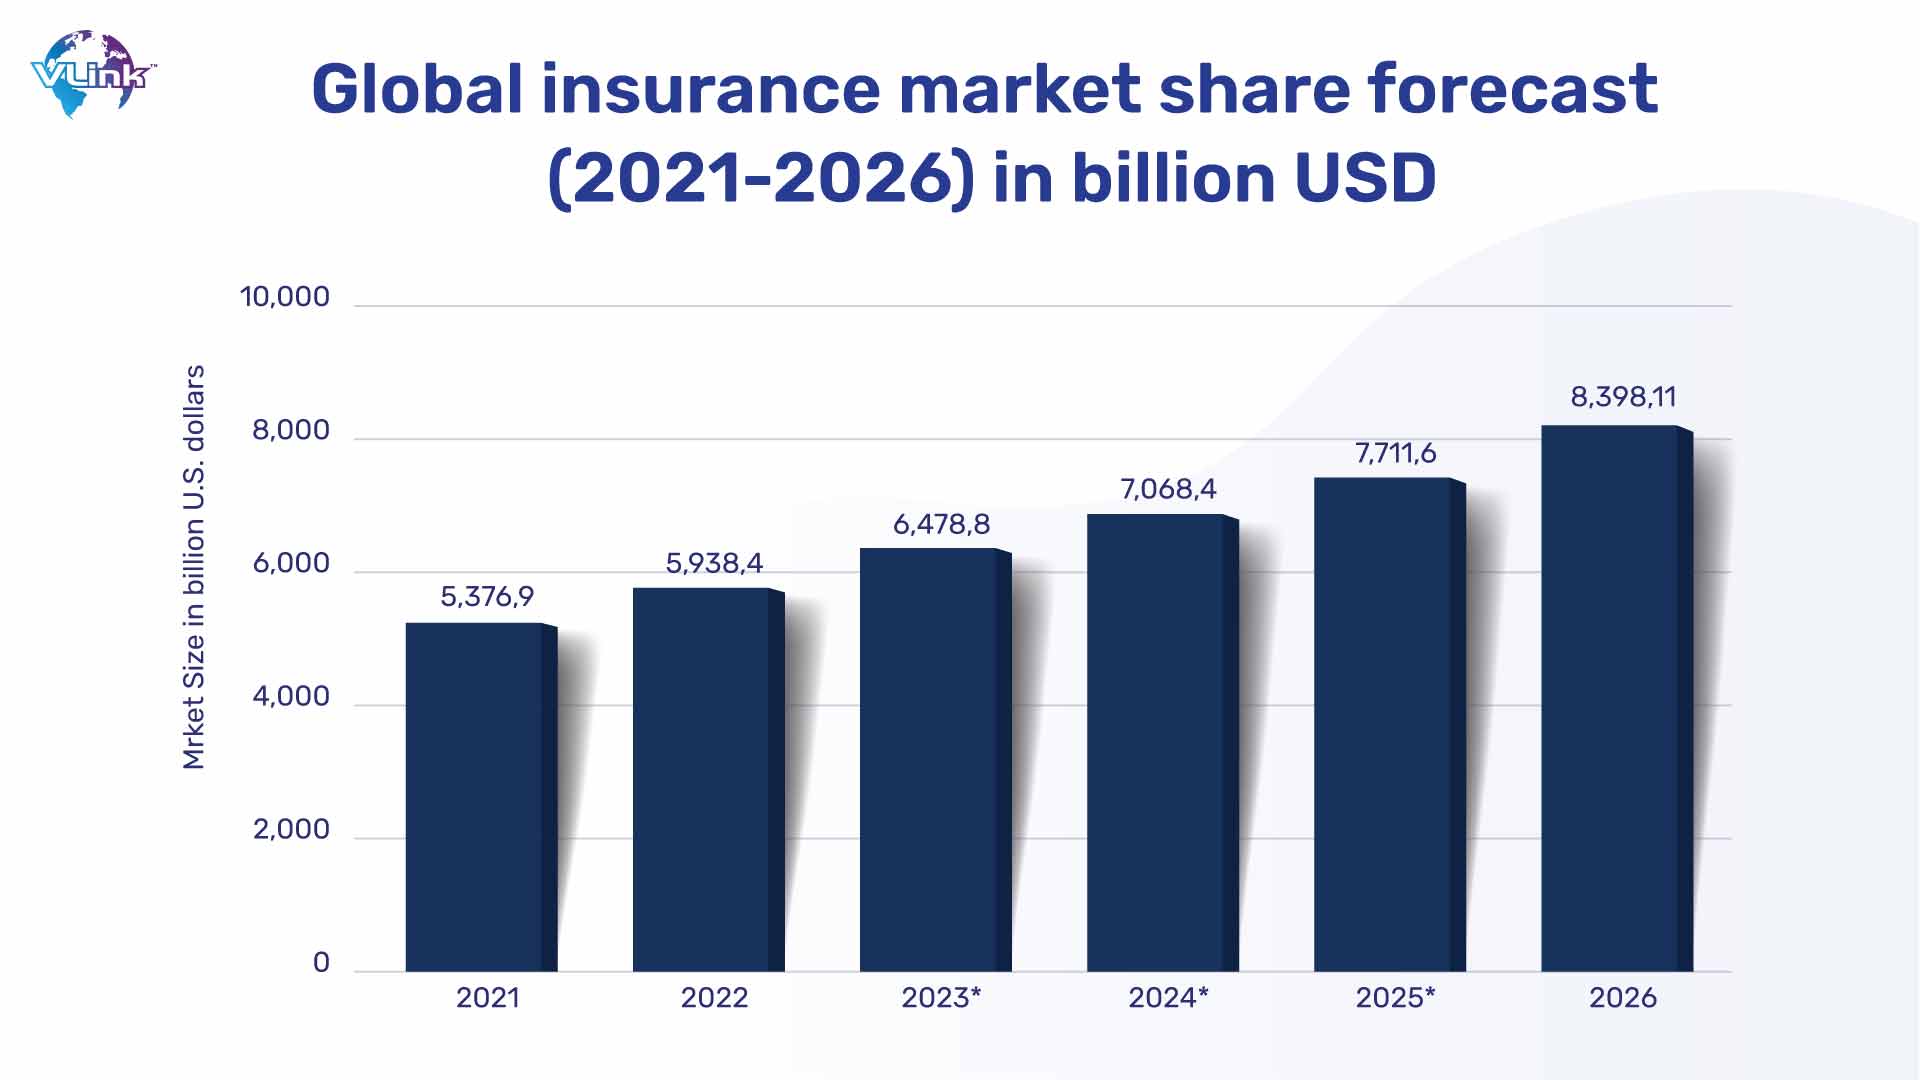 Global insurance market share forecast in billion